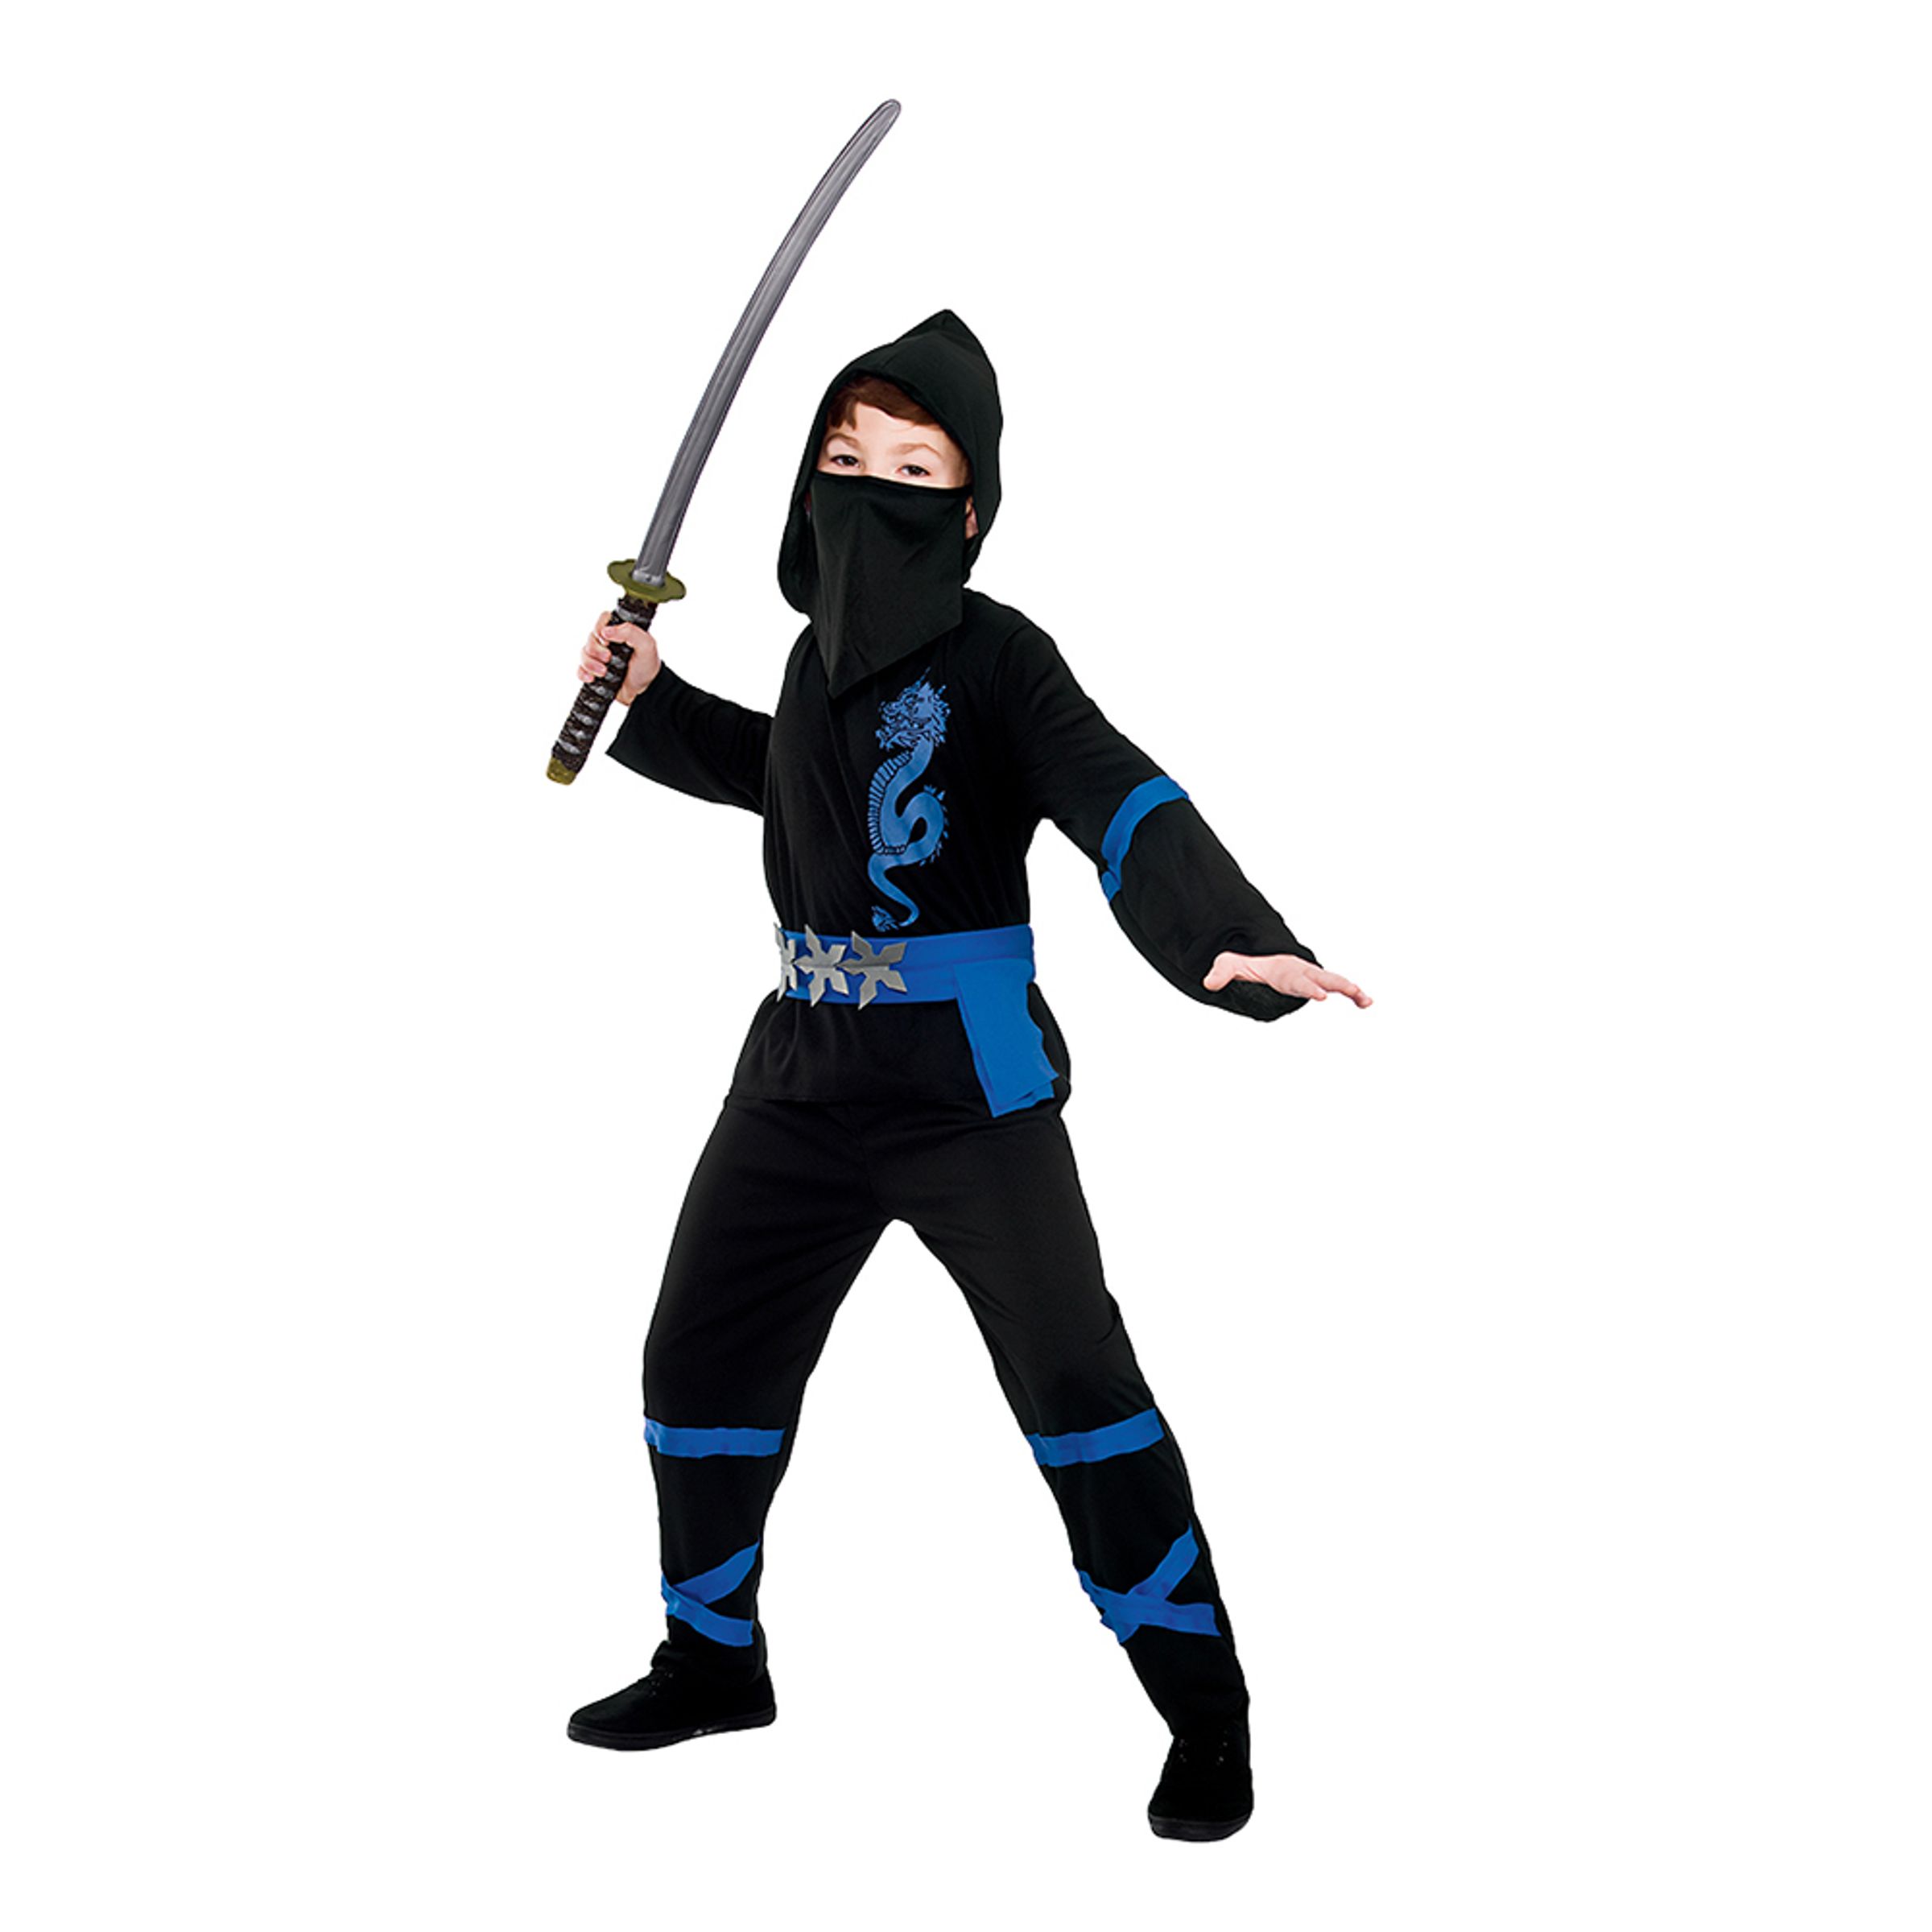 Svart/Blå Power Ninja Barn Maskeraddräkt - Medium